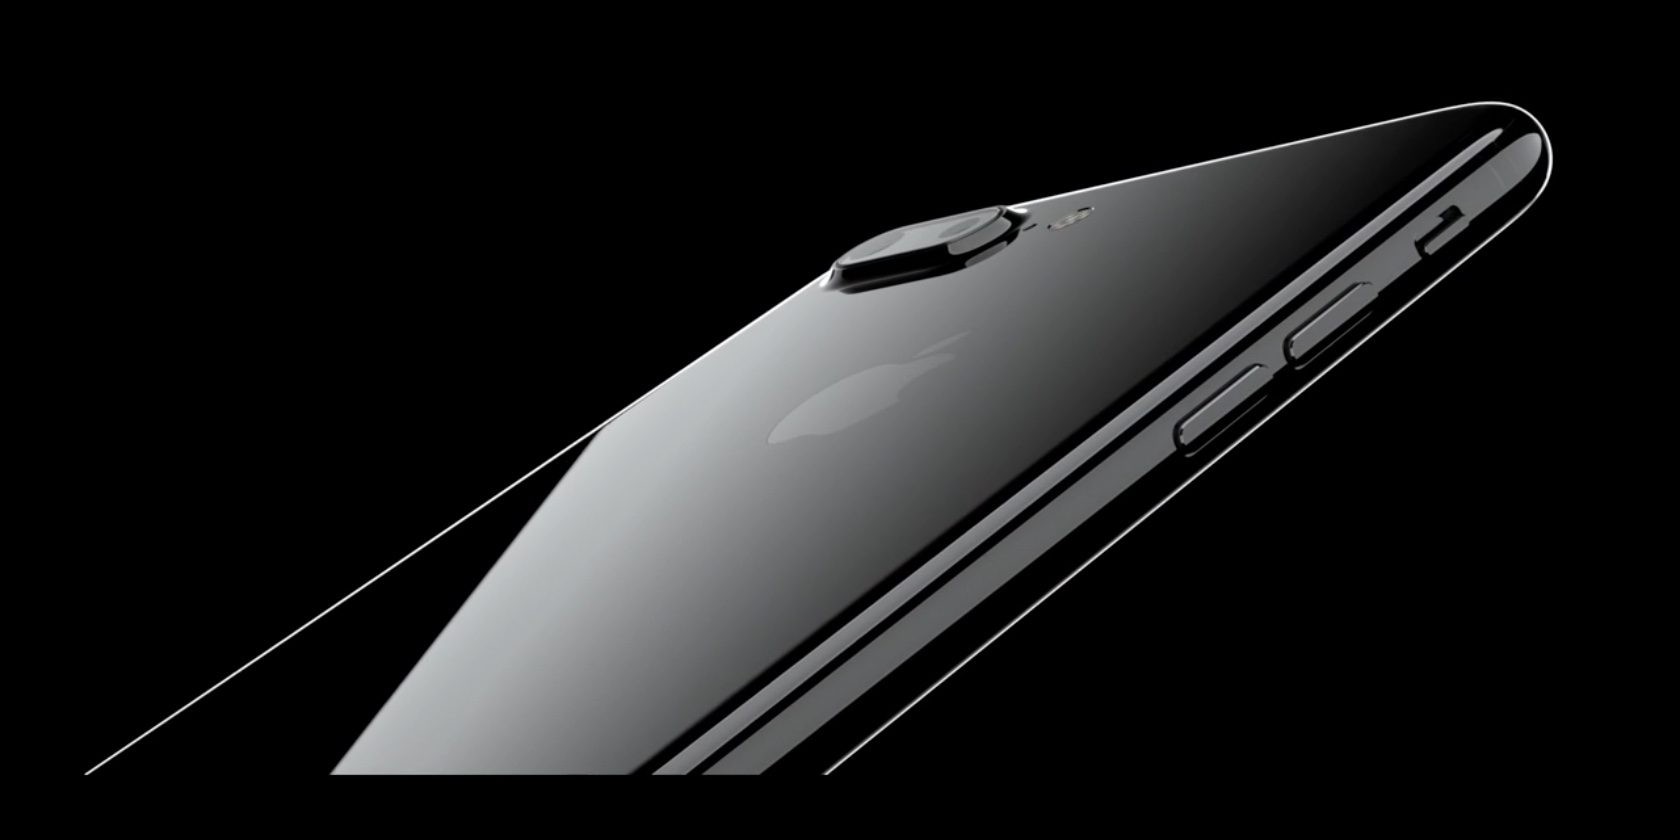 นักวิเคราะห์ชี้ความต้องการ iPhone 7 ในตลาดผ่านช่วงพีคสุดไปแล้ว แม้เพิ่งวางขายได้แค่ 2 เดือน